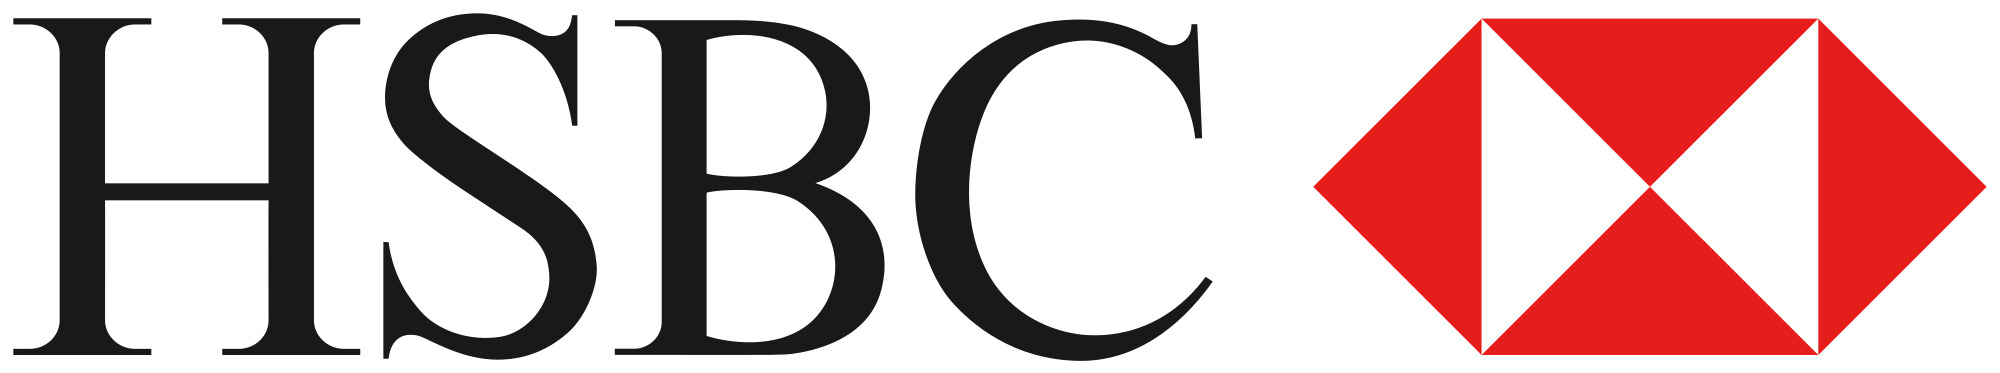 HSBC Logo icons